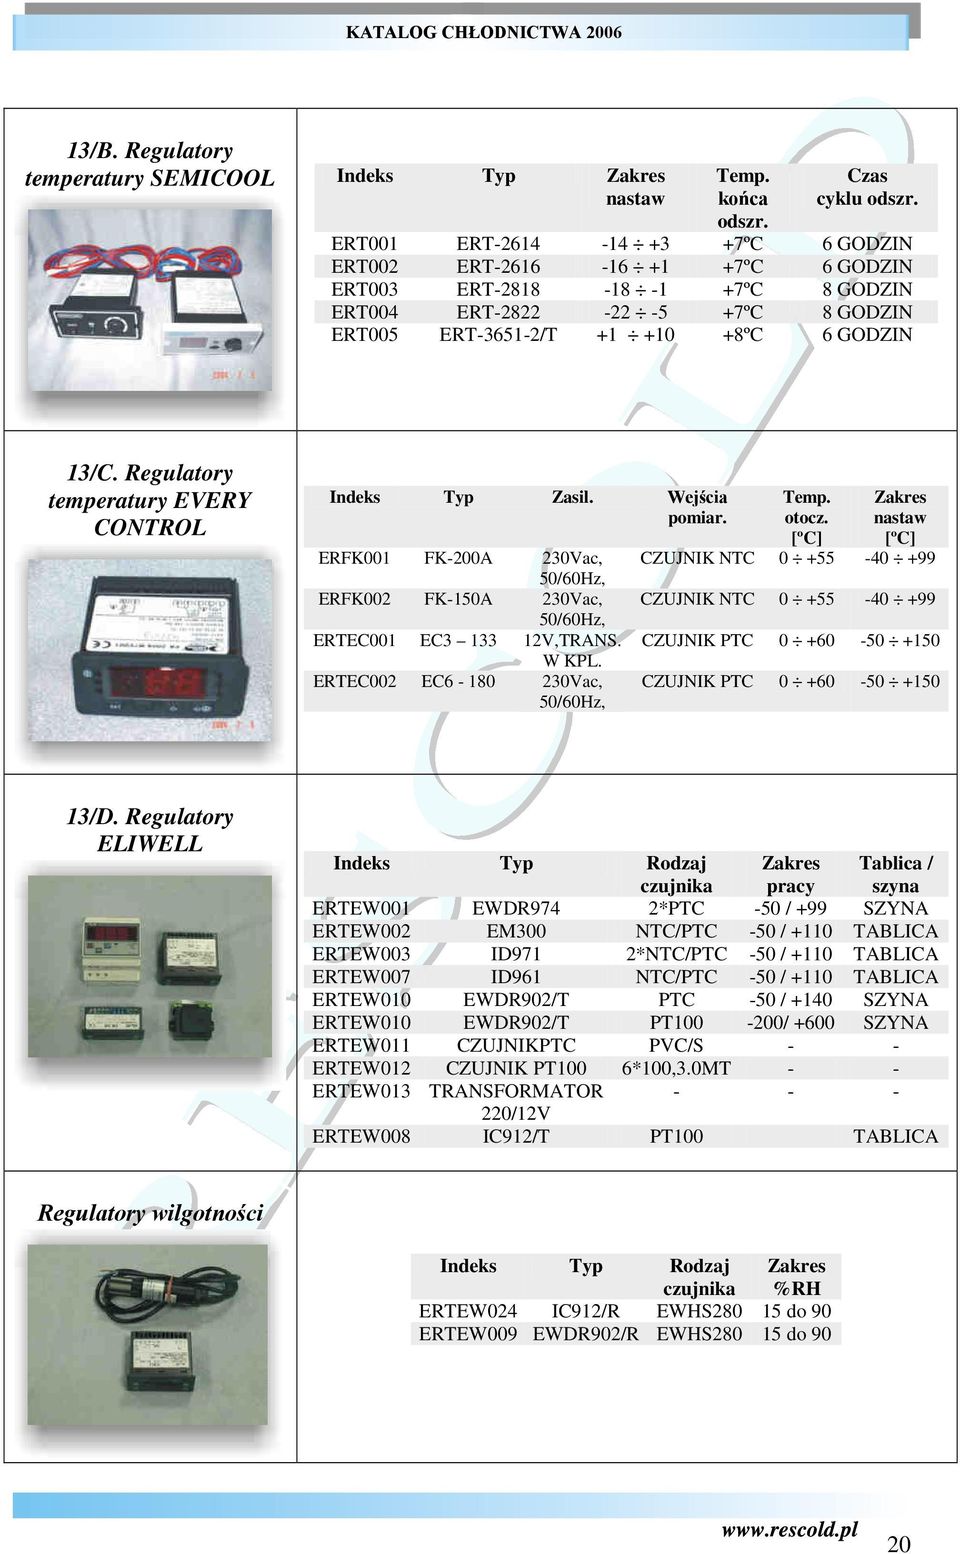 Regulatory temperatury EVERY CONTROL Indeks Typ Zasil. Wejścia pomiar. ERFK001 FK-200A 230Vac, 50/60Hz, ERFK002 FK-150A 230Vac, 50/60Hz, ERTEC001 EC3 133 12V,TRANS. W KPL.